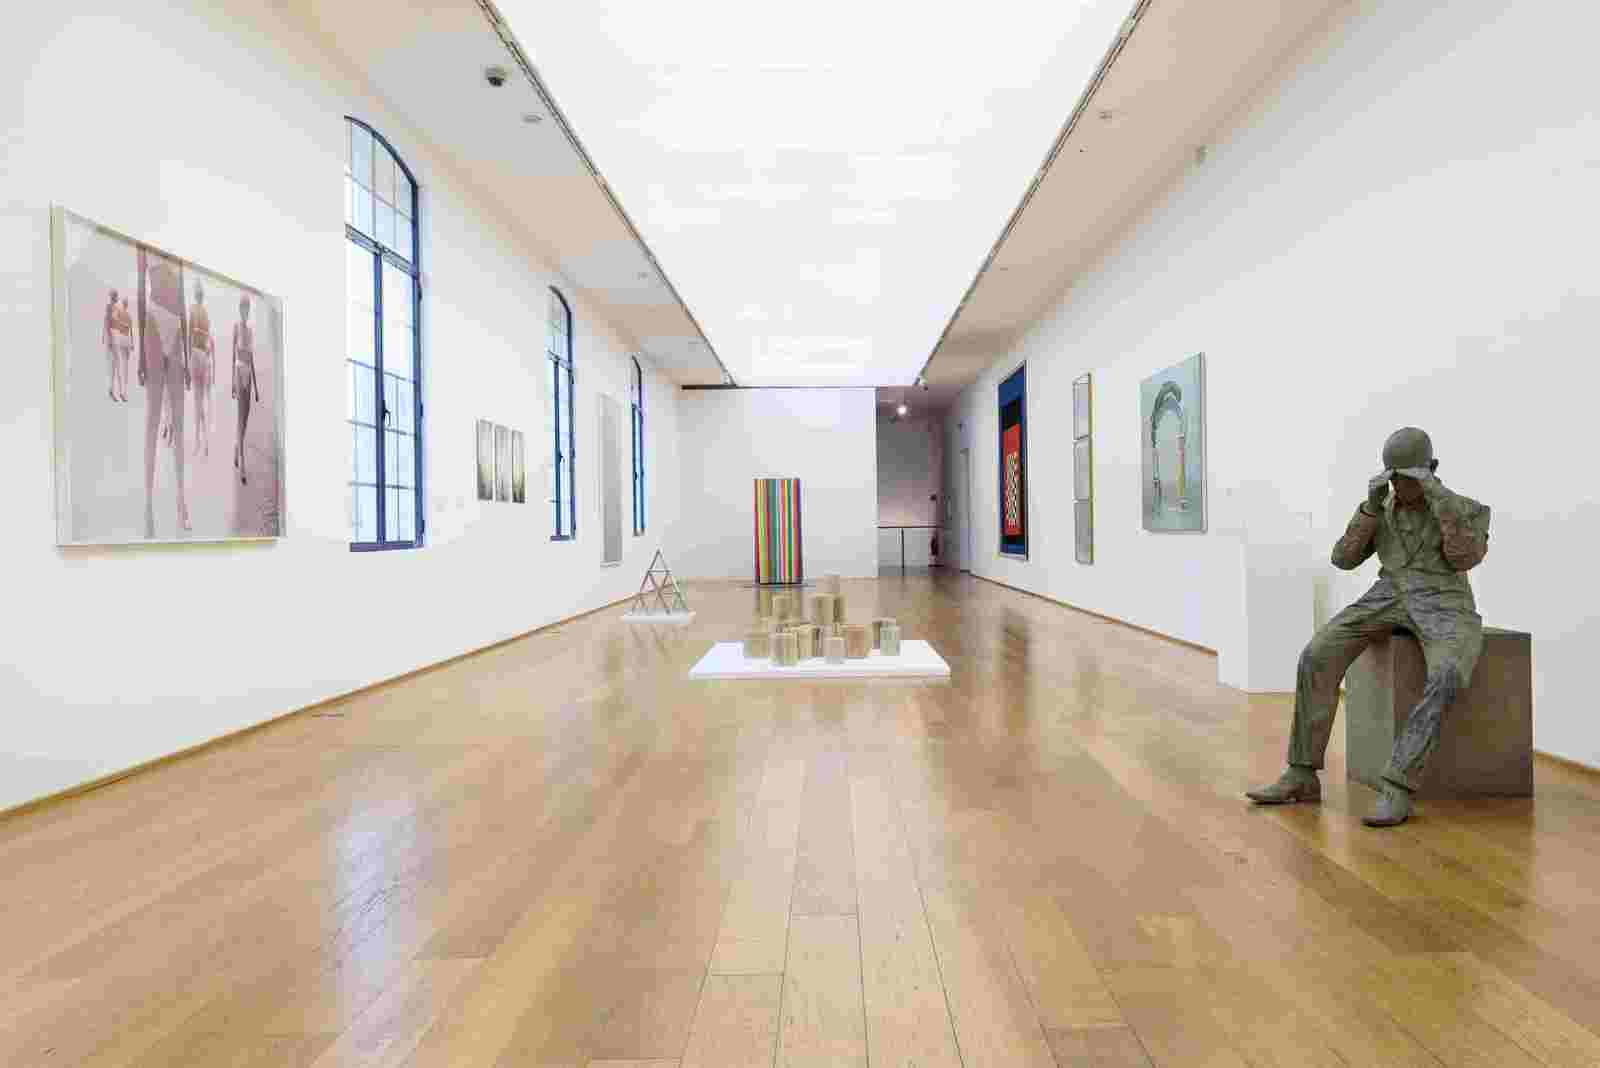 mambo collezione permanente attivita mostre arte online istituzione bologna musei apertiaportechiuse